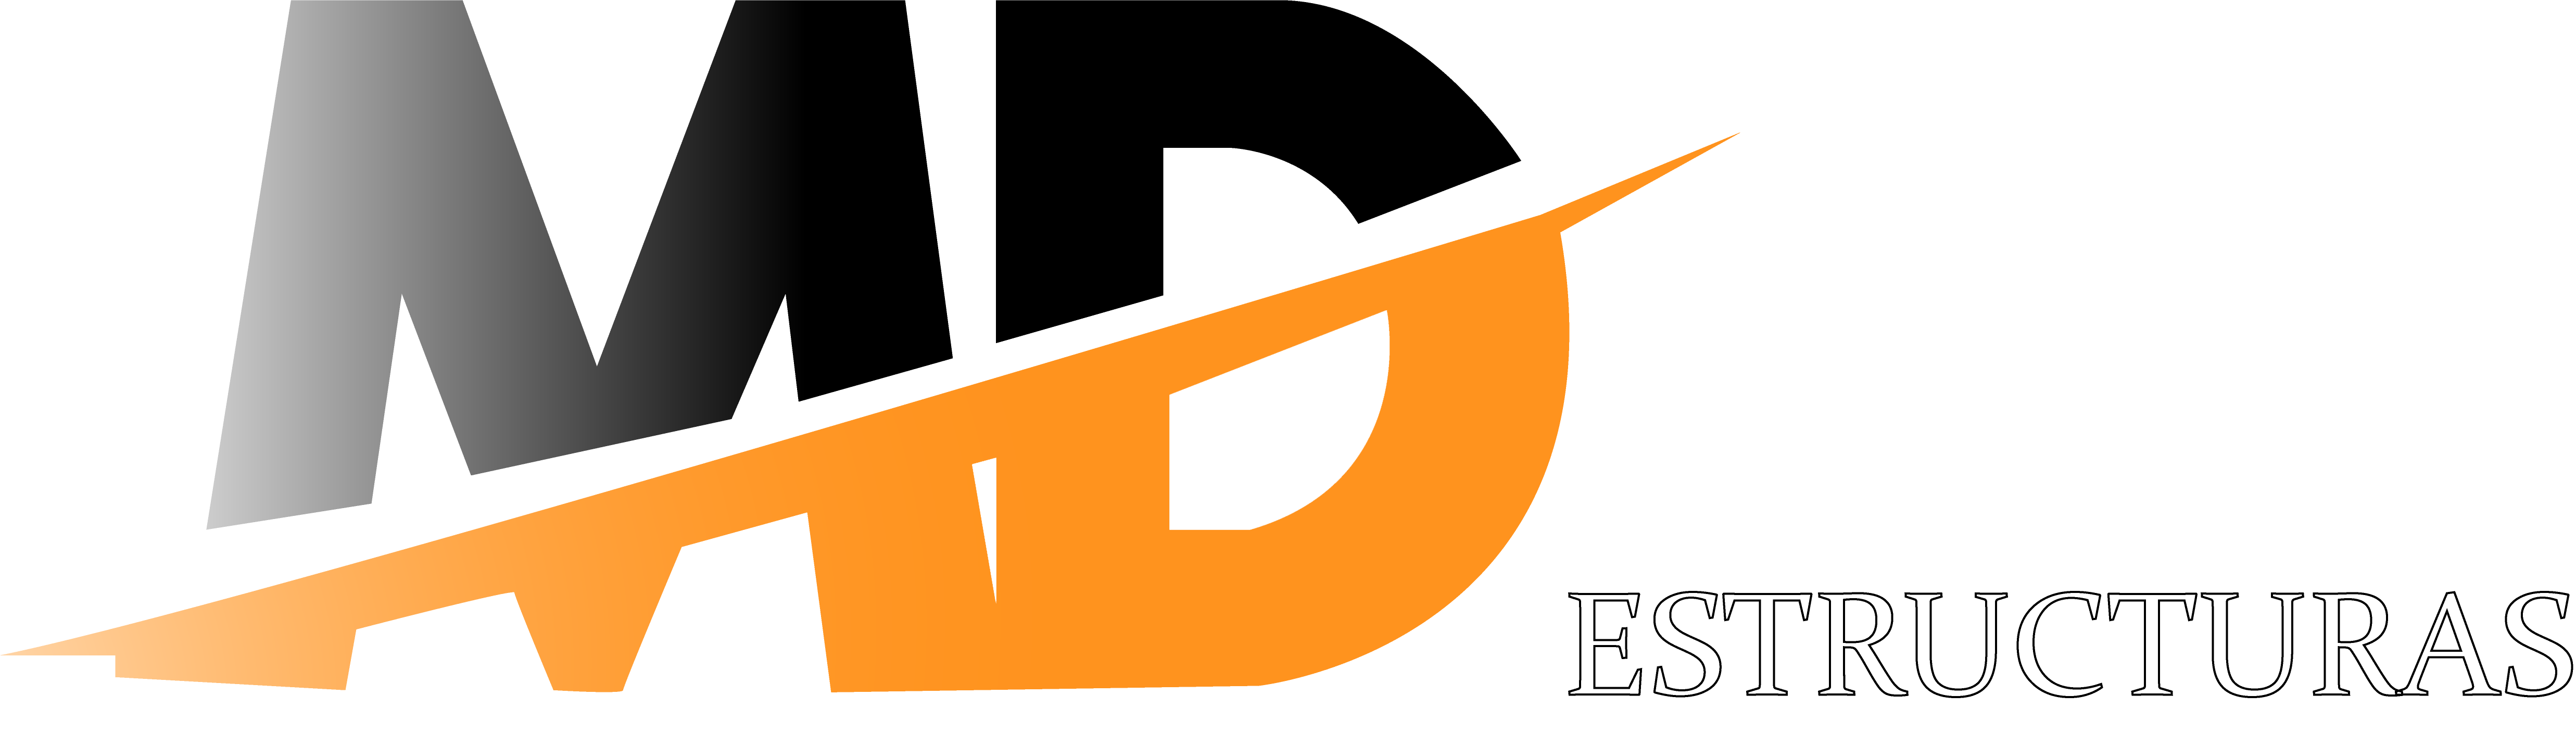 MD Estructuras Logo 1 Blanco